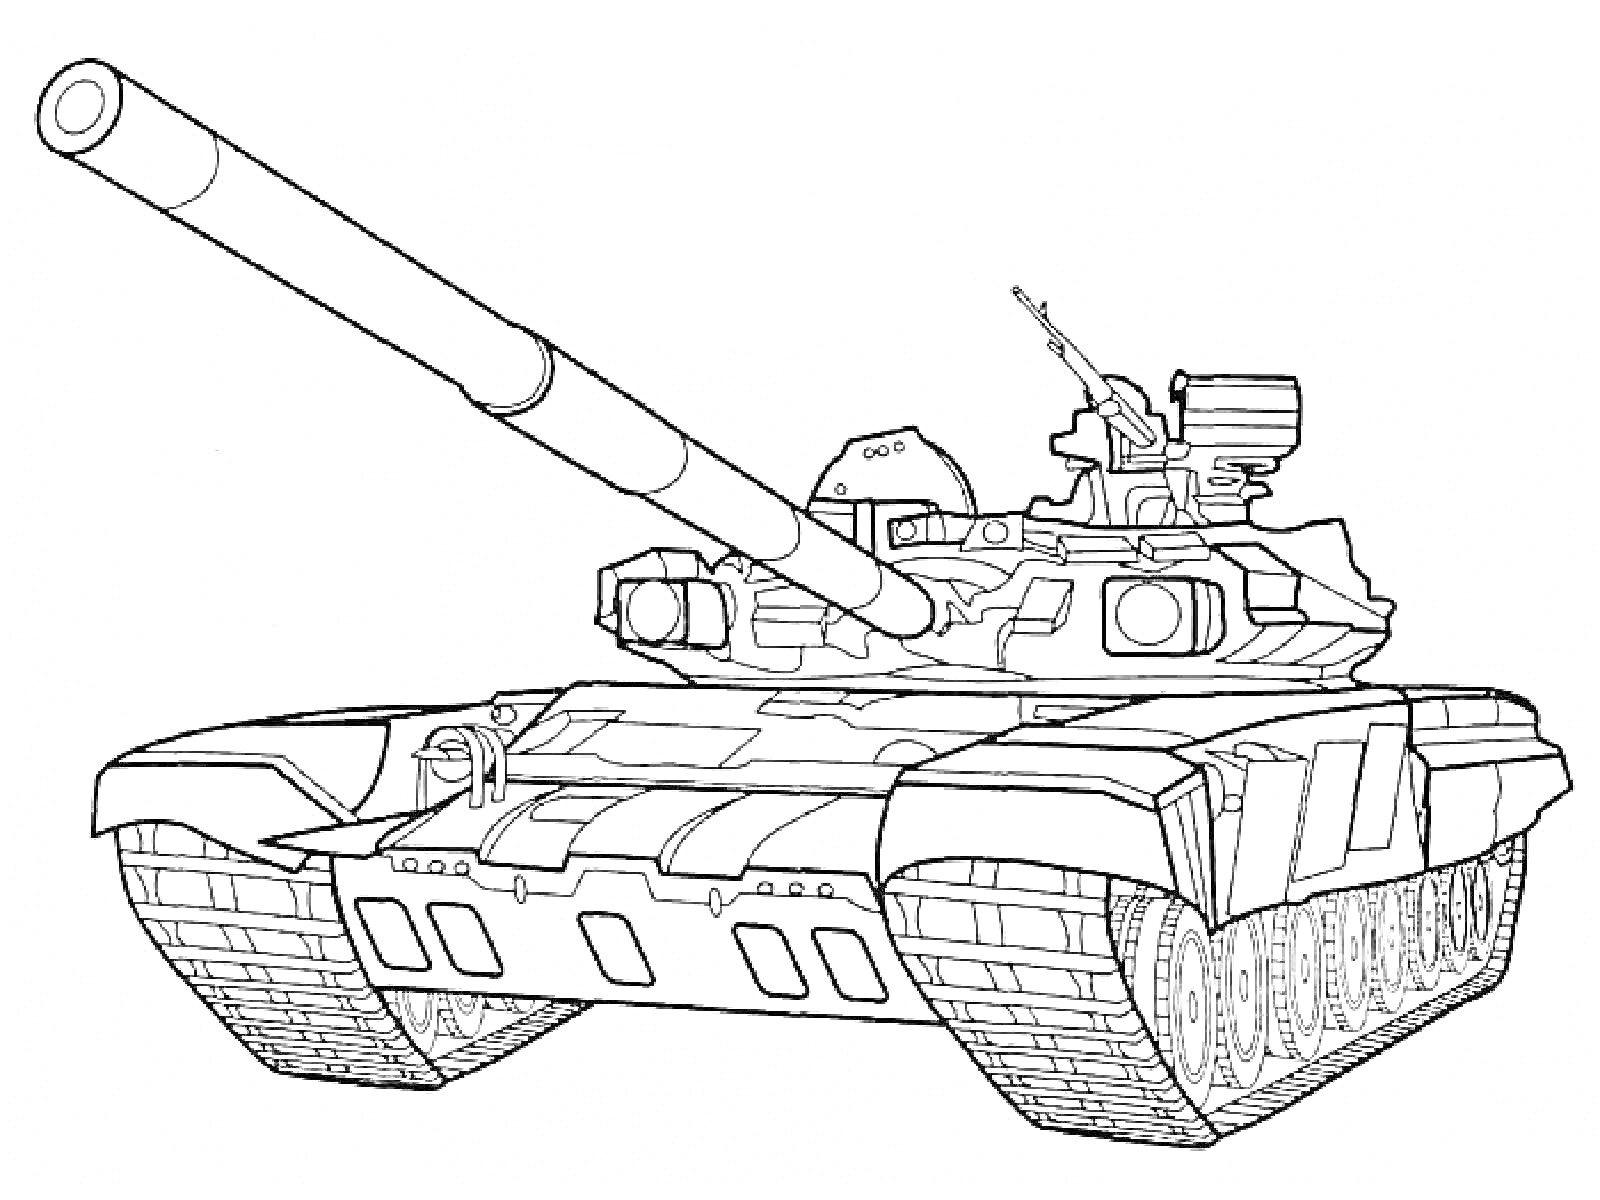 Раскраска Танковая машина с пушкой, гусеничным движителем и пулеметом на башне